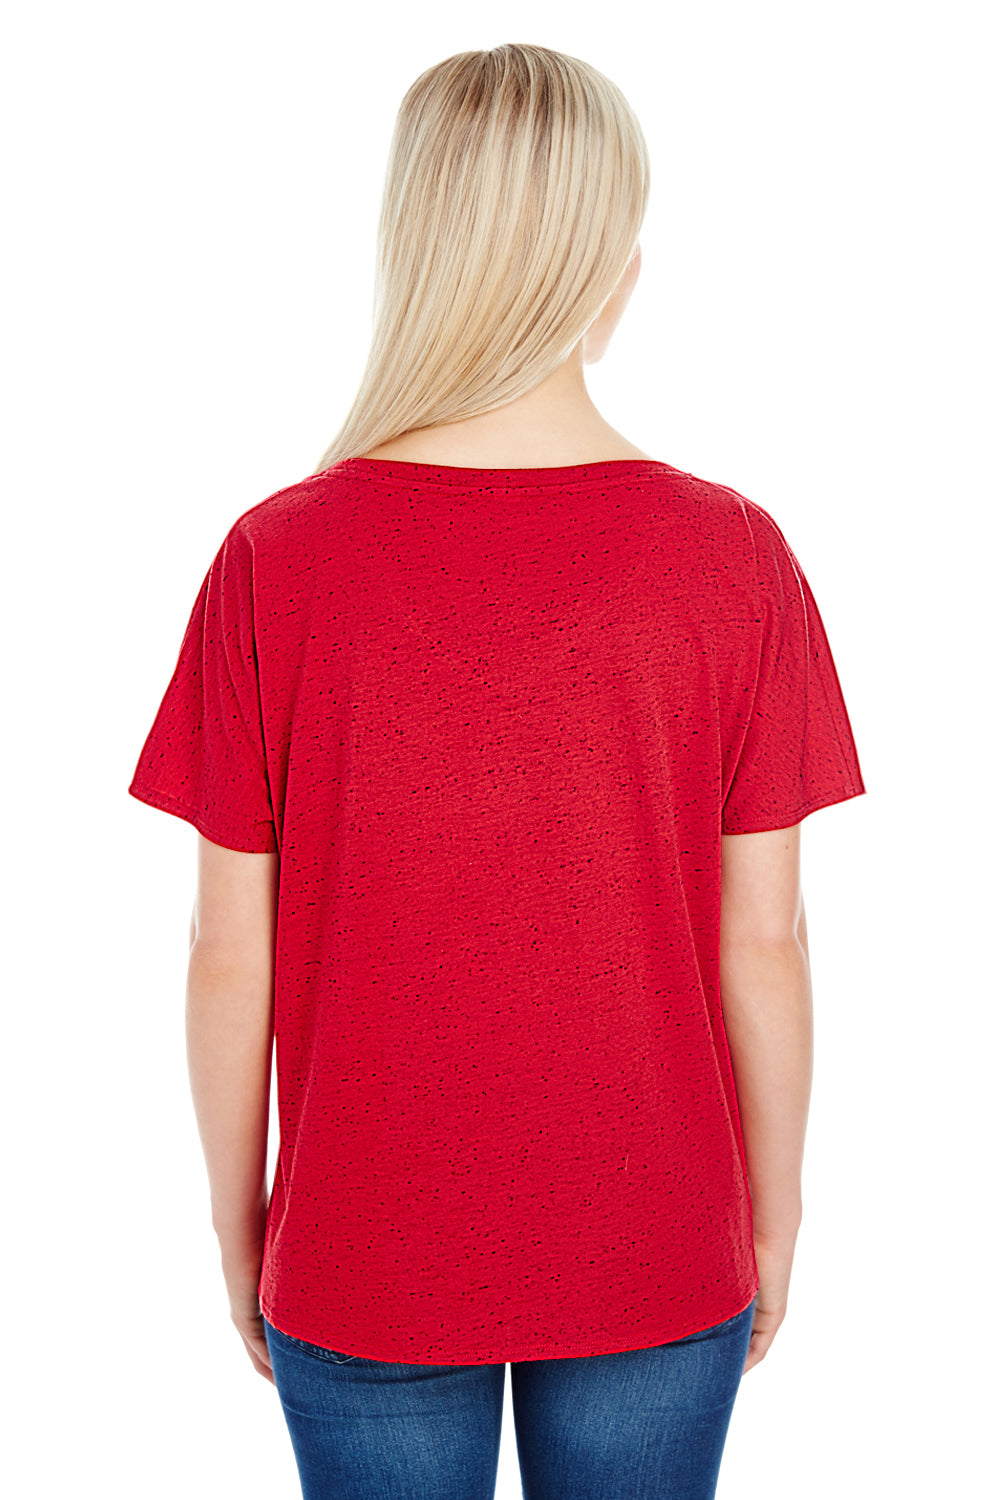 Threadfast Apparel 203FV Womens Fleck Short Sleeve V-Neck T-Shirt Red Back